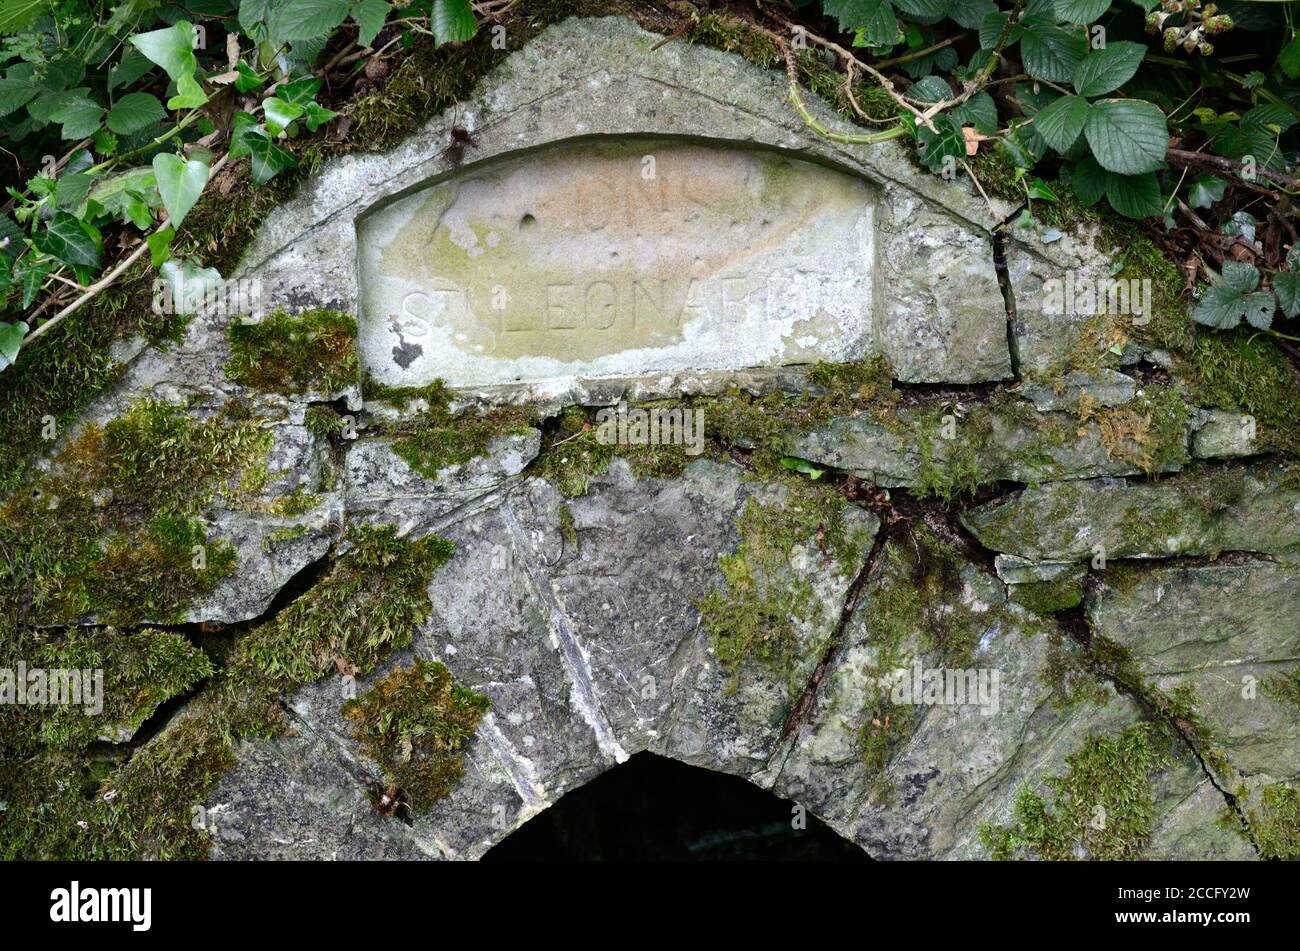 St Leonards medievale Santo pozzo primavera Rosemarket Pembrokeshire Galles Cymru REGNO UNITO Foto Stock